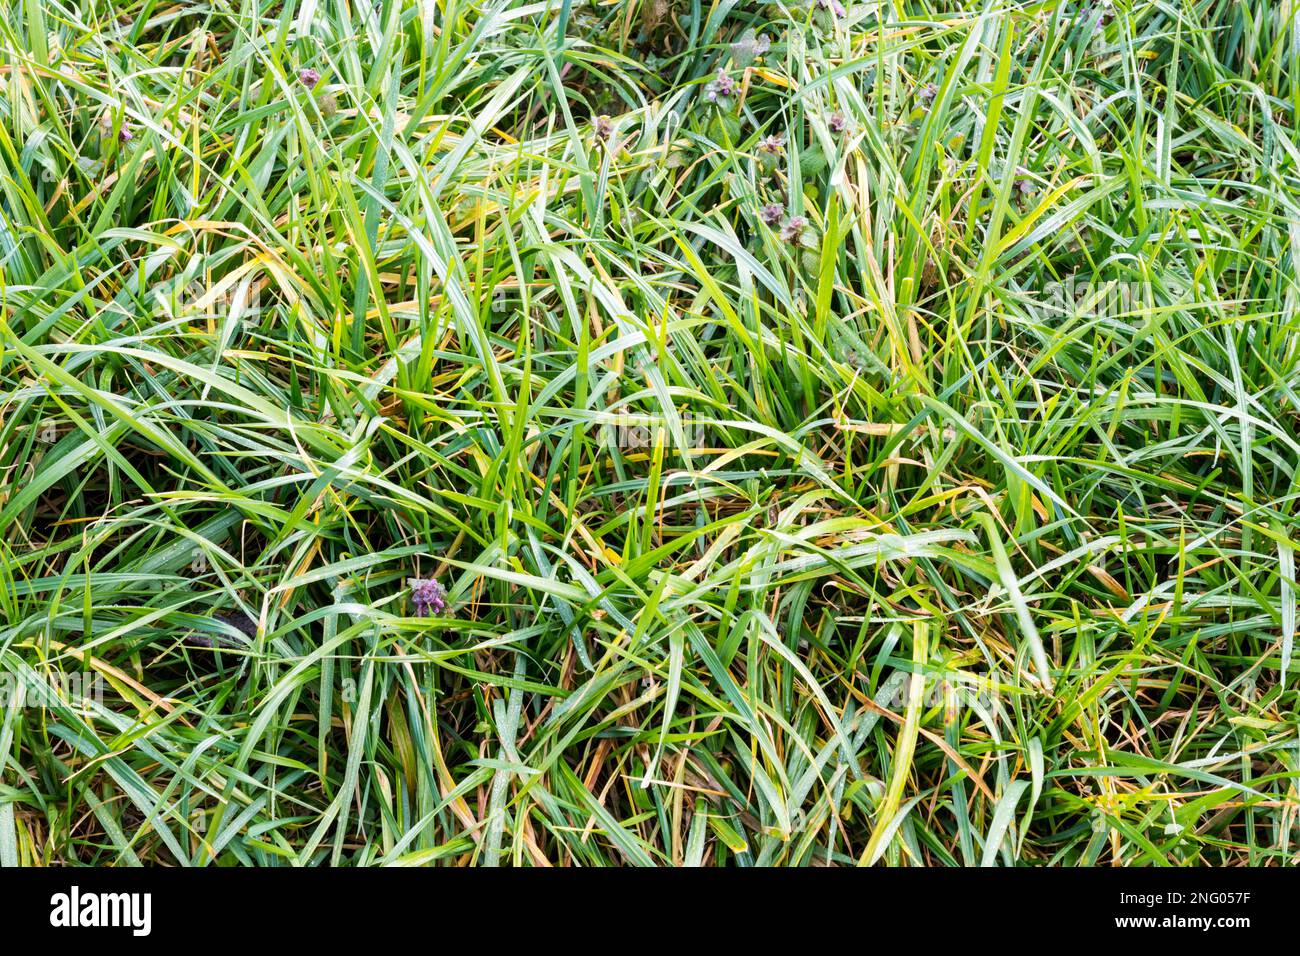 Eine dichte Herbst-/Winterbepflanzung, die hauptsächlich aus Westerwolds Ryegrass (Lolium multiflorum) besteht. Stockfoto